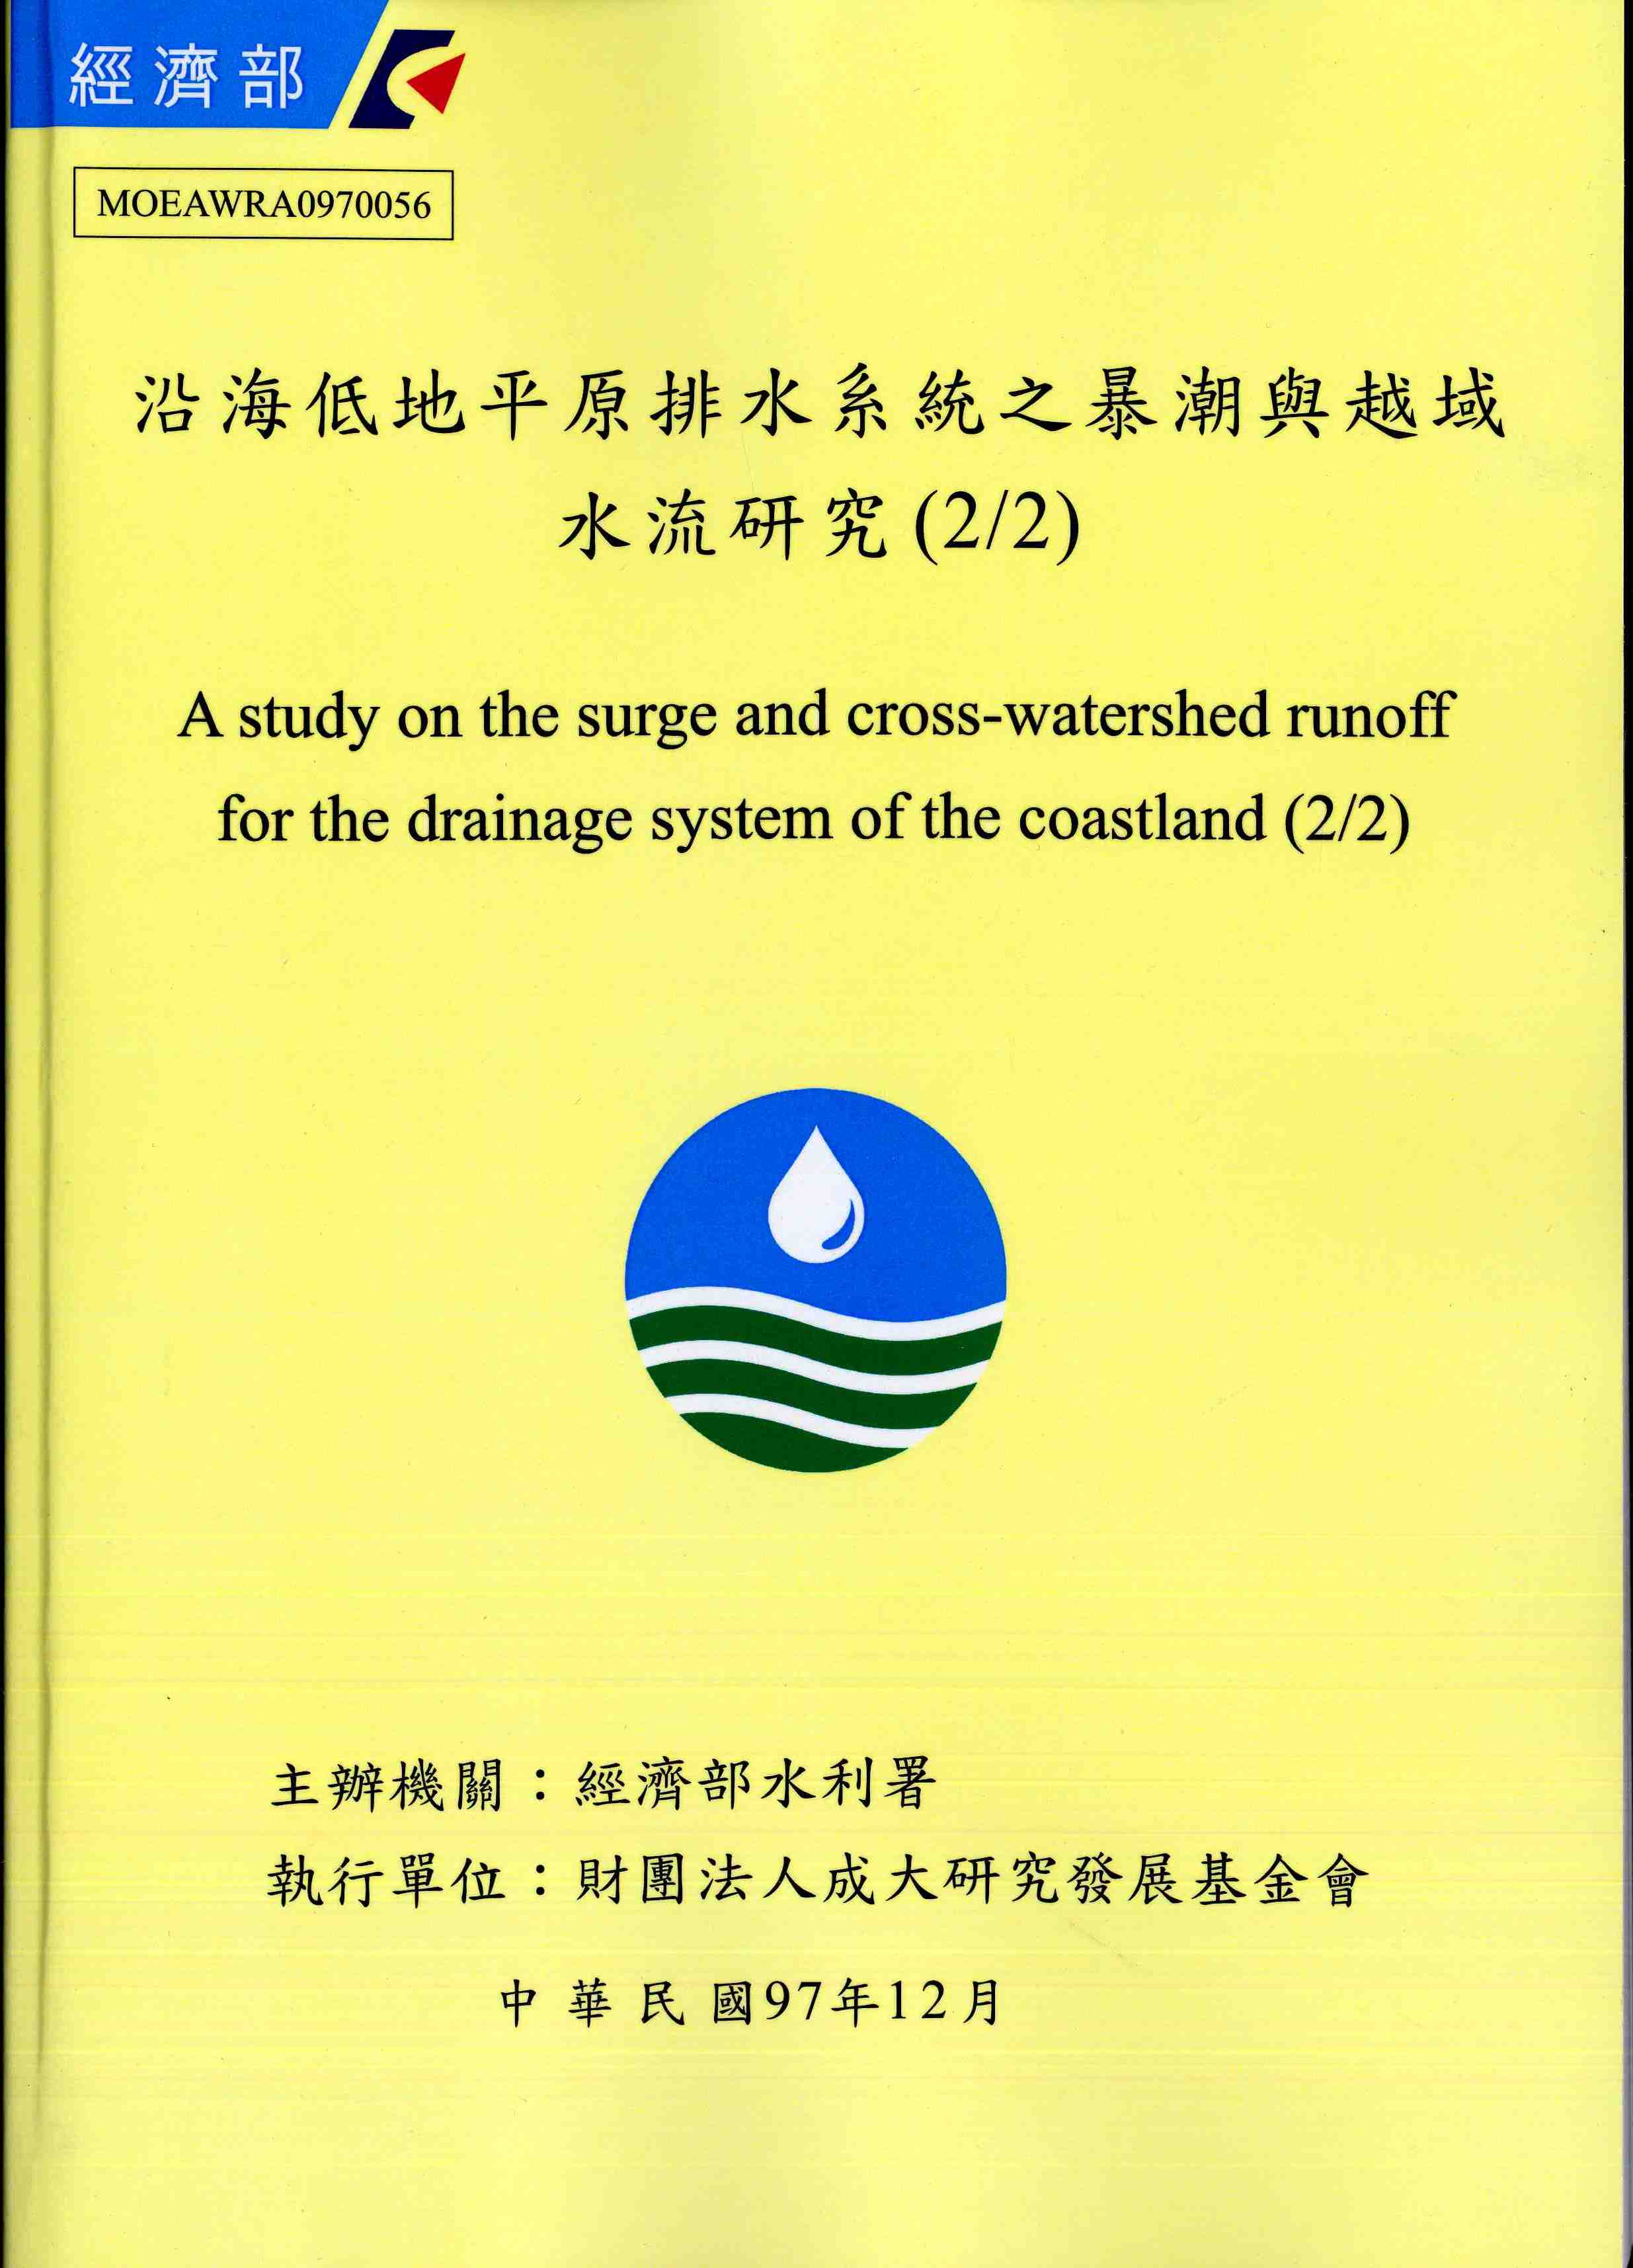 沿海低地平原排水系統之暴潮與越域水流研究(2/2)